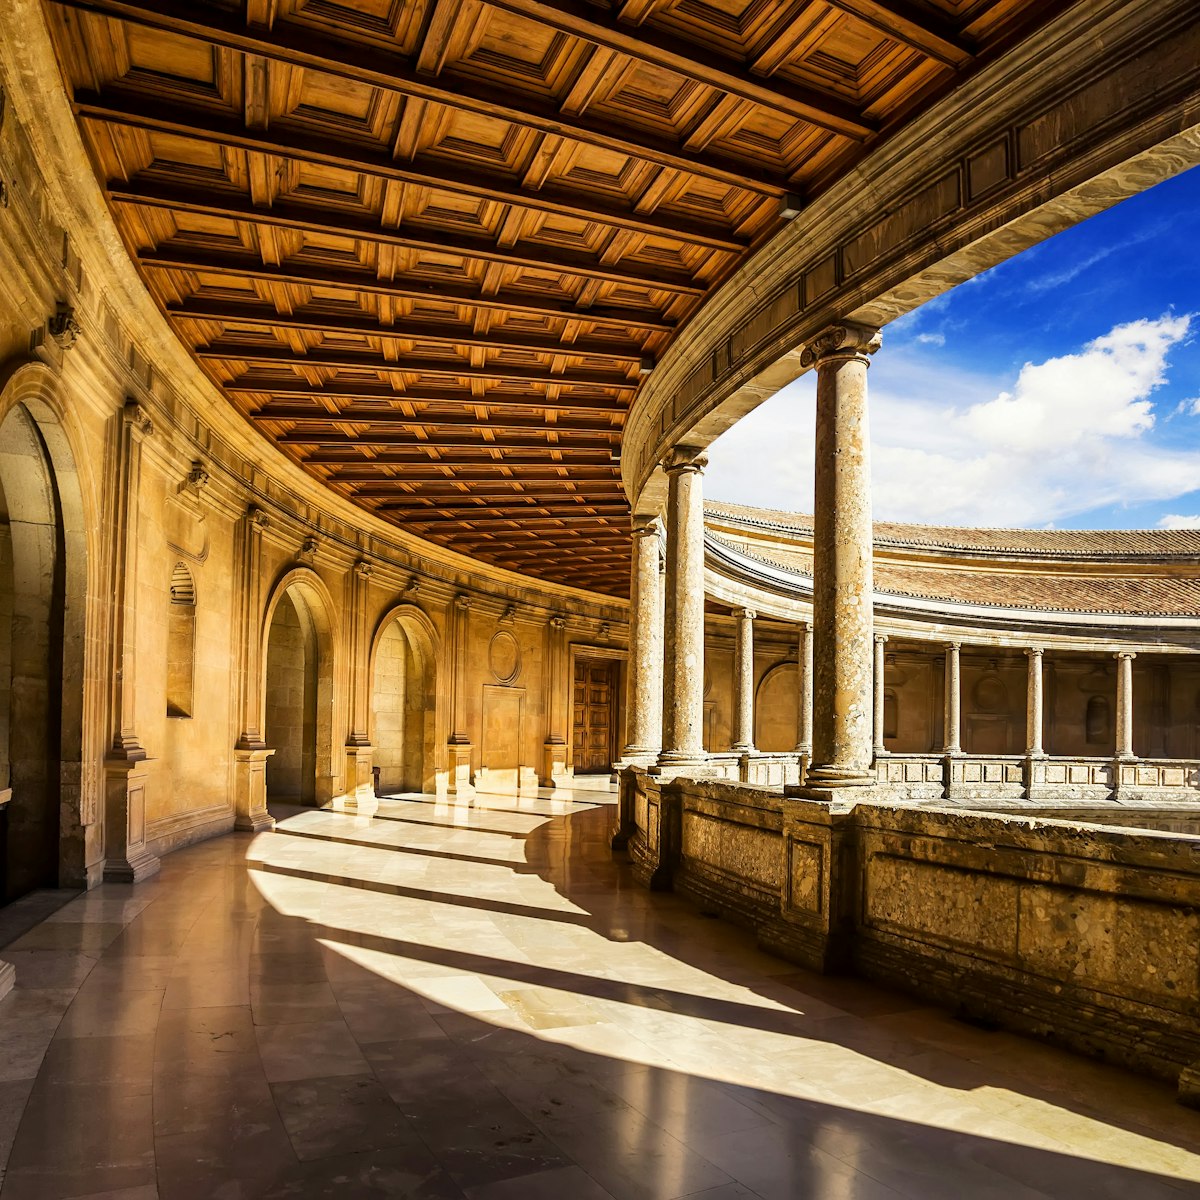 Courtyard of the Palacio de Carlos V in La Alhambra, Granada, Spain.